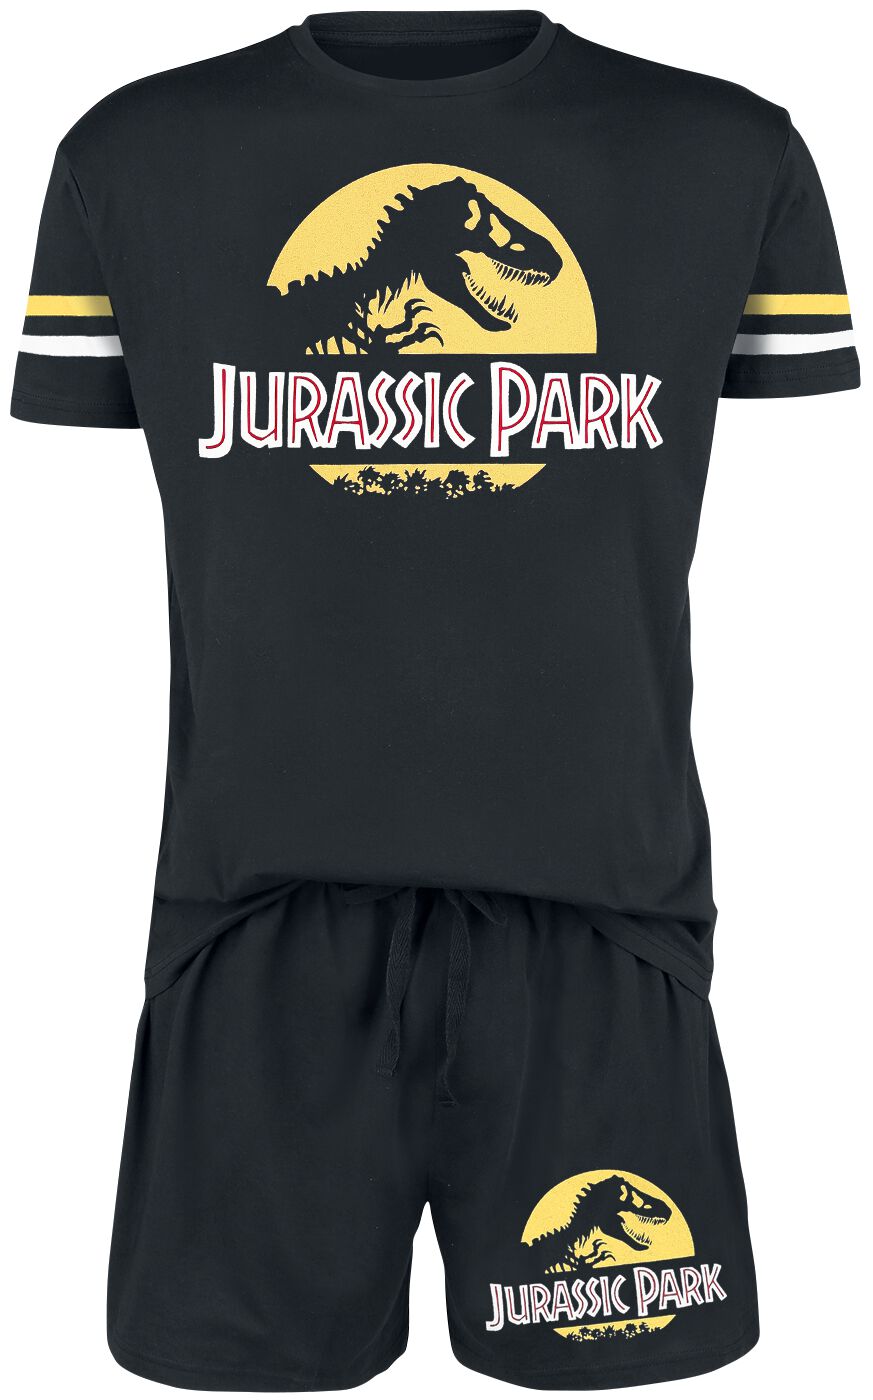 Jurassic Park Schlafanzug - Logo - S bis 3XL - für Männer - Größe 3XL - schwarz  - EMP exklusives Merchandise!